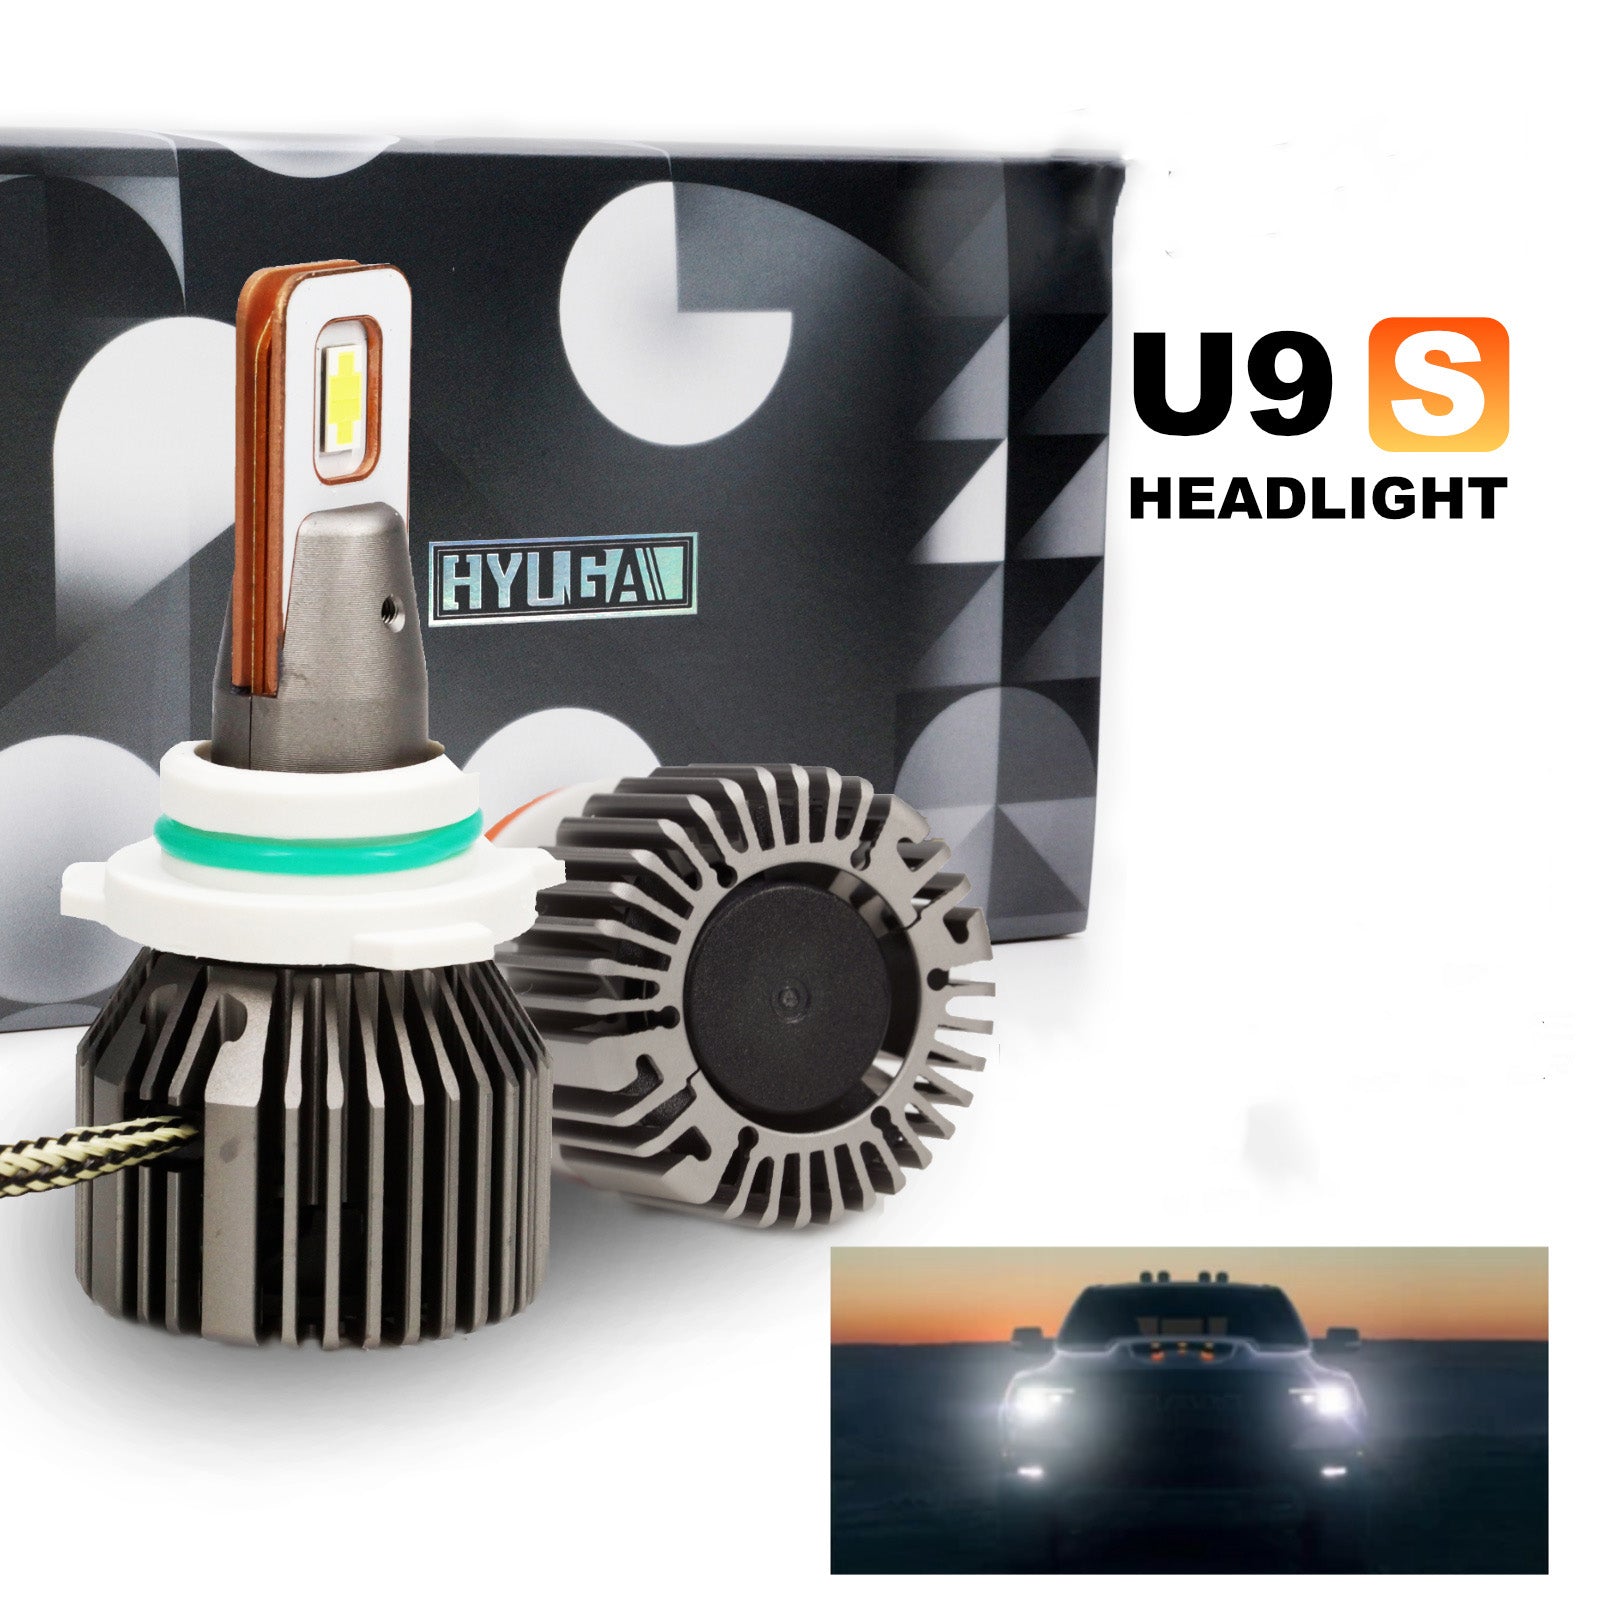 LED Headlight Conversion Kit for 2013-19 Dodge Ram U9S (9005 9012) + I